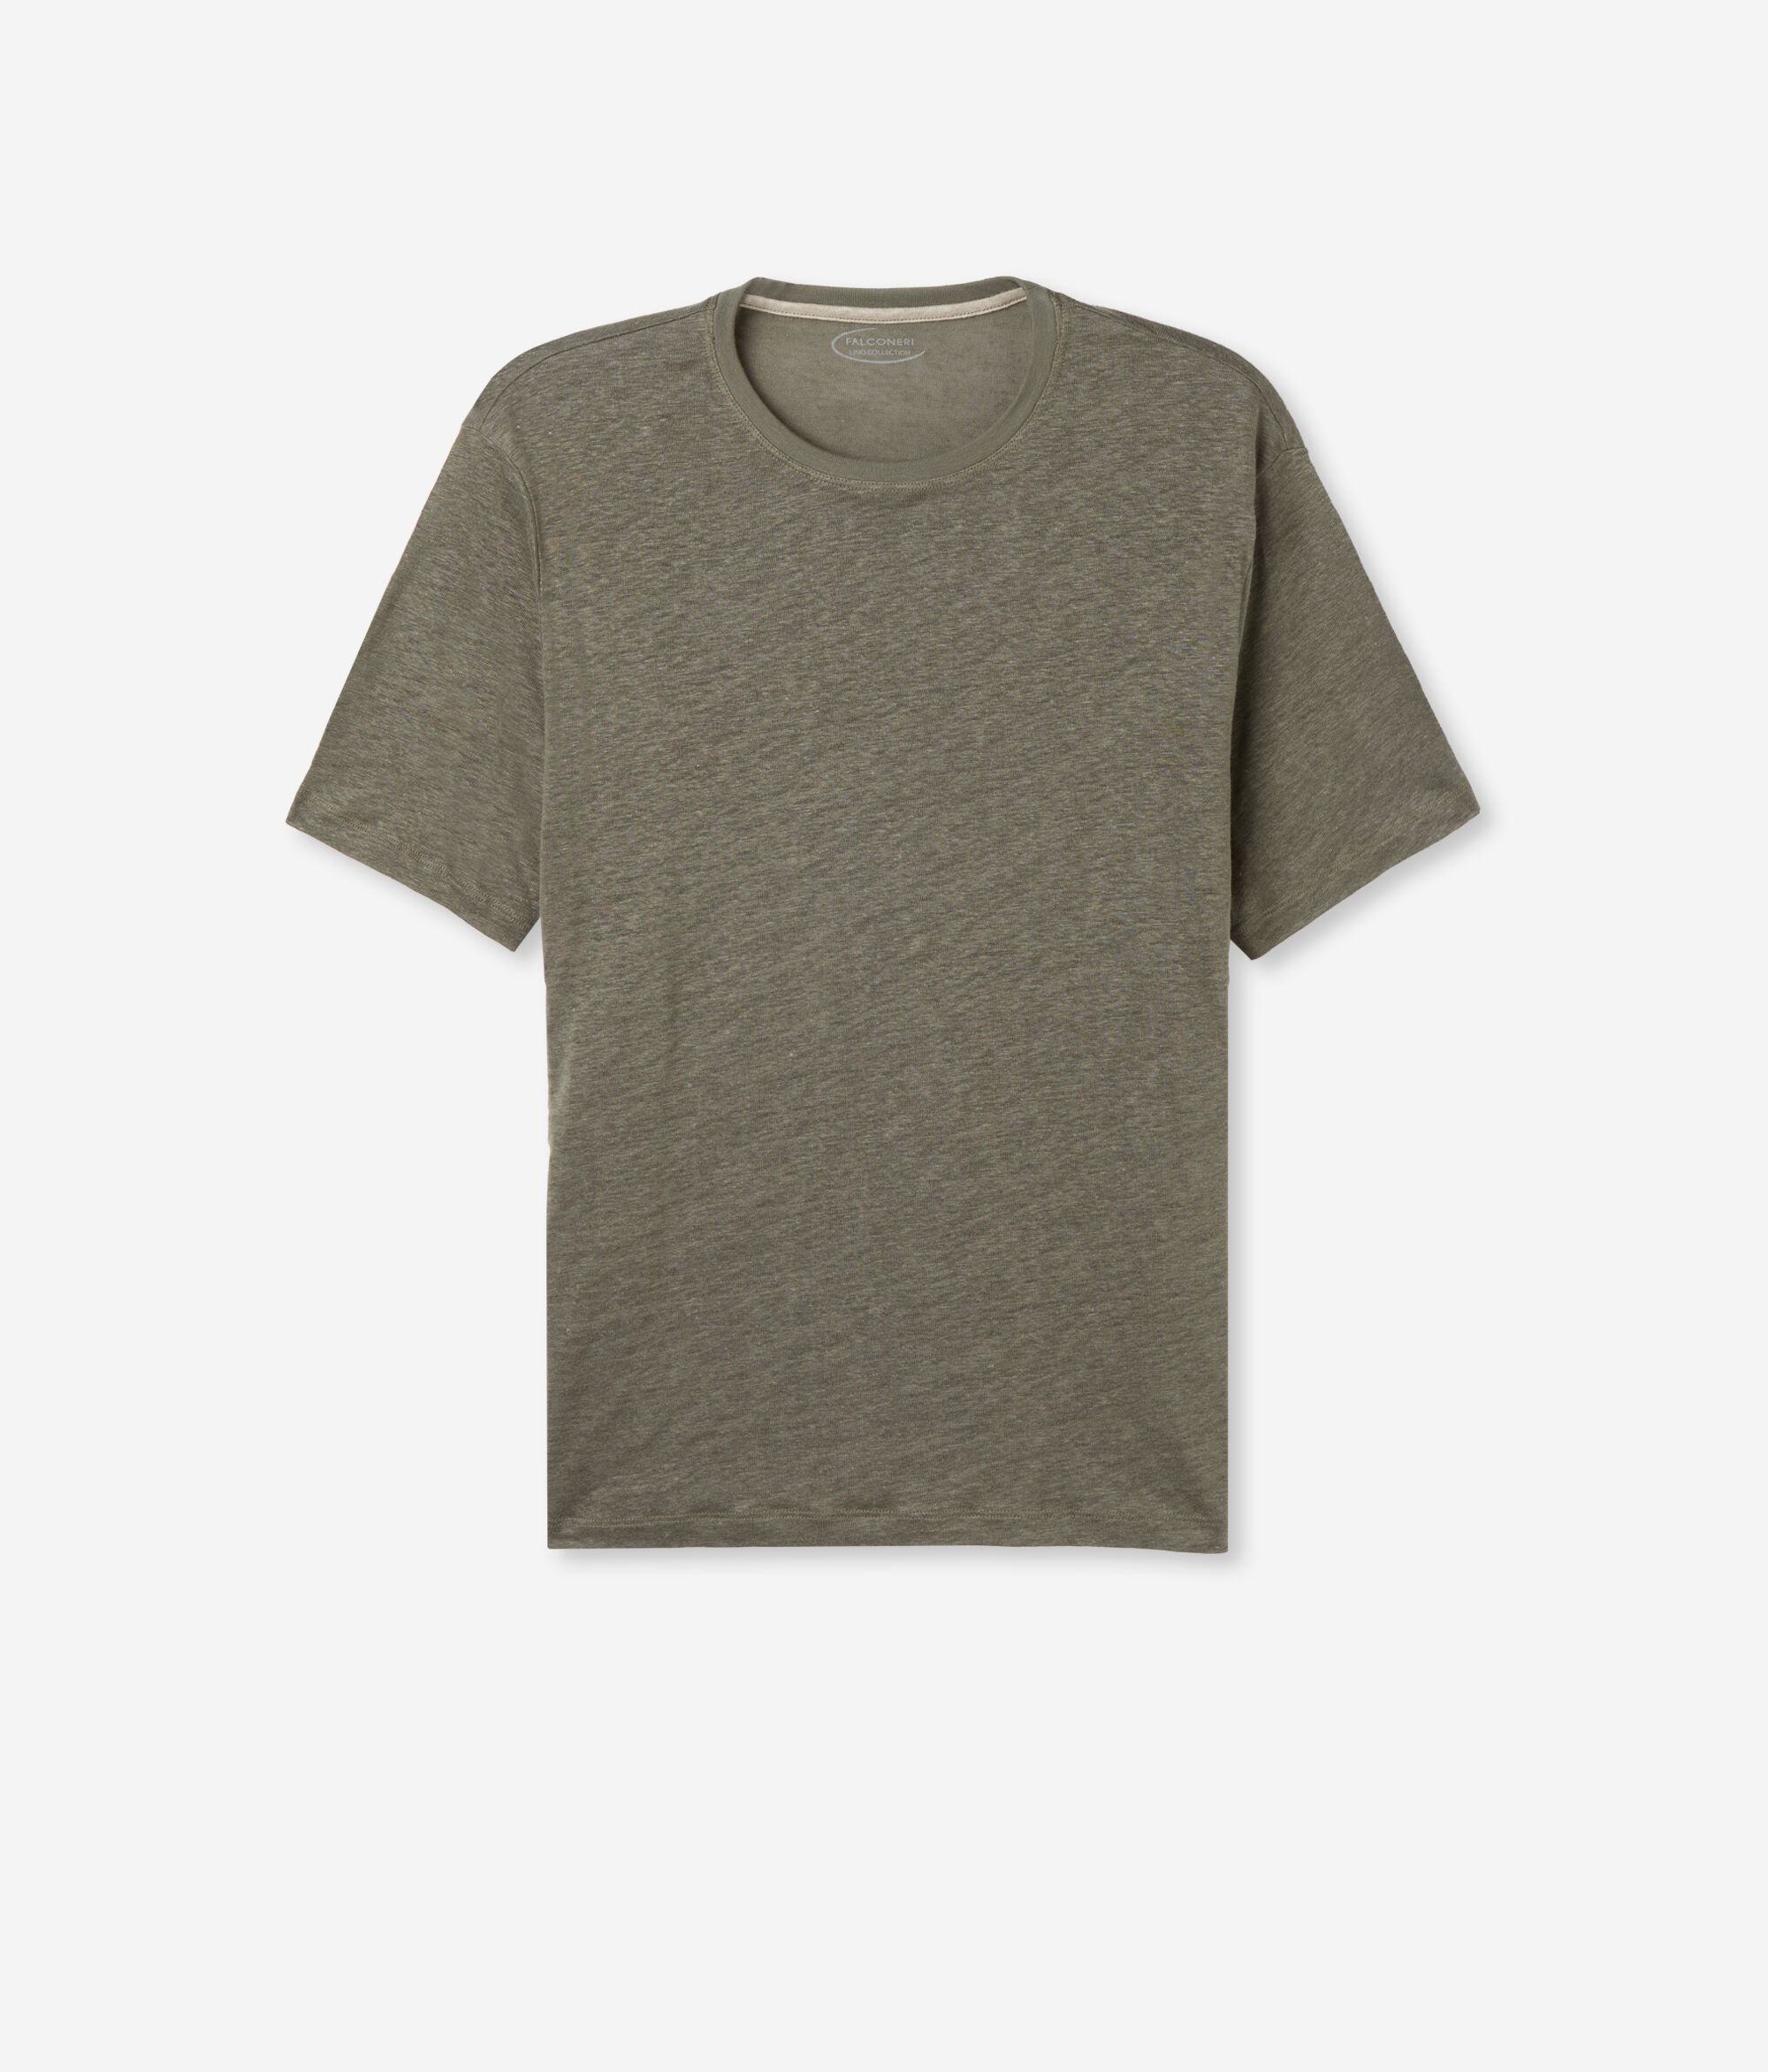 Leinen-T-Shirt